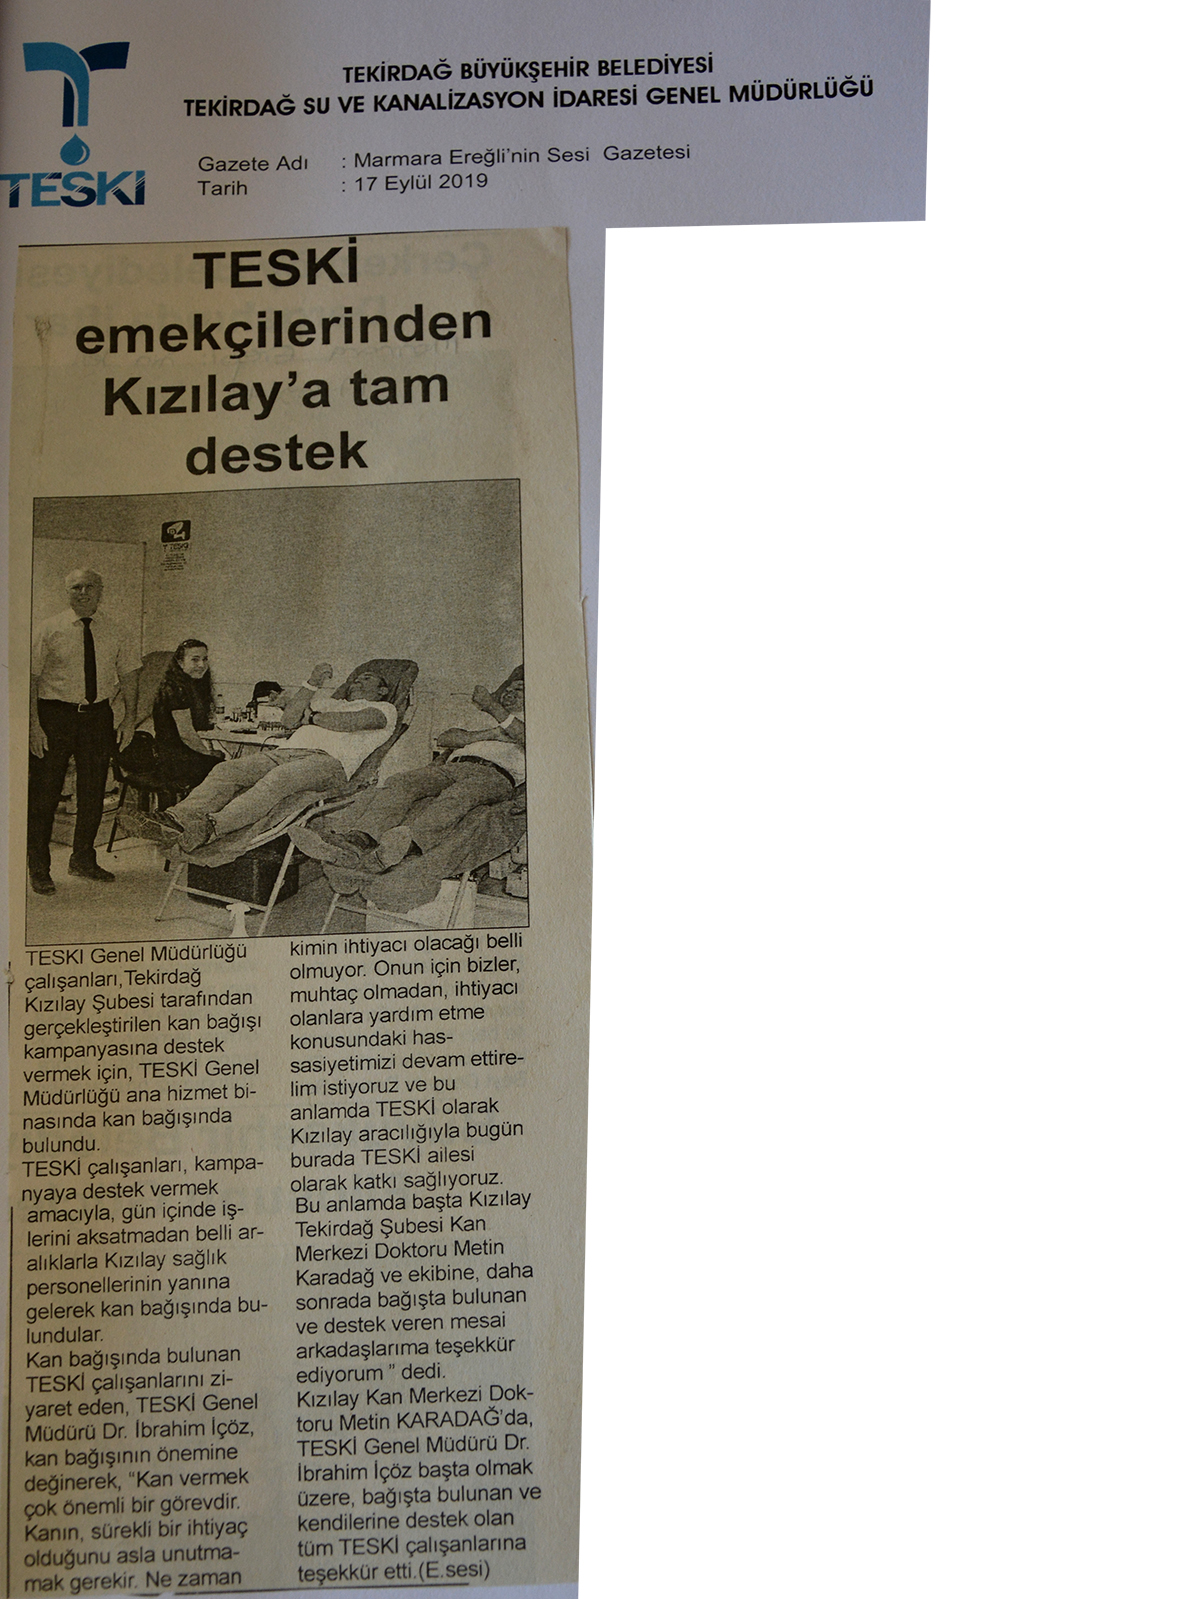 TESKİ Emekçilerinden Kızılay'a Tam Destek (Marmaraereğlisi'nin Sesi Gazetesi)